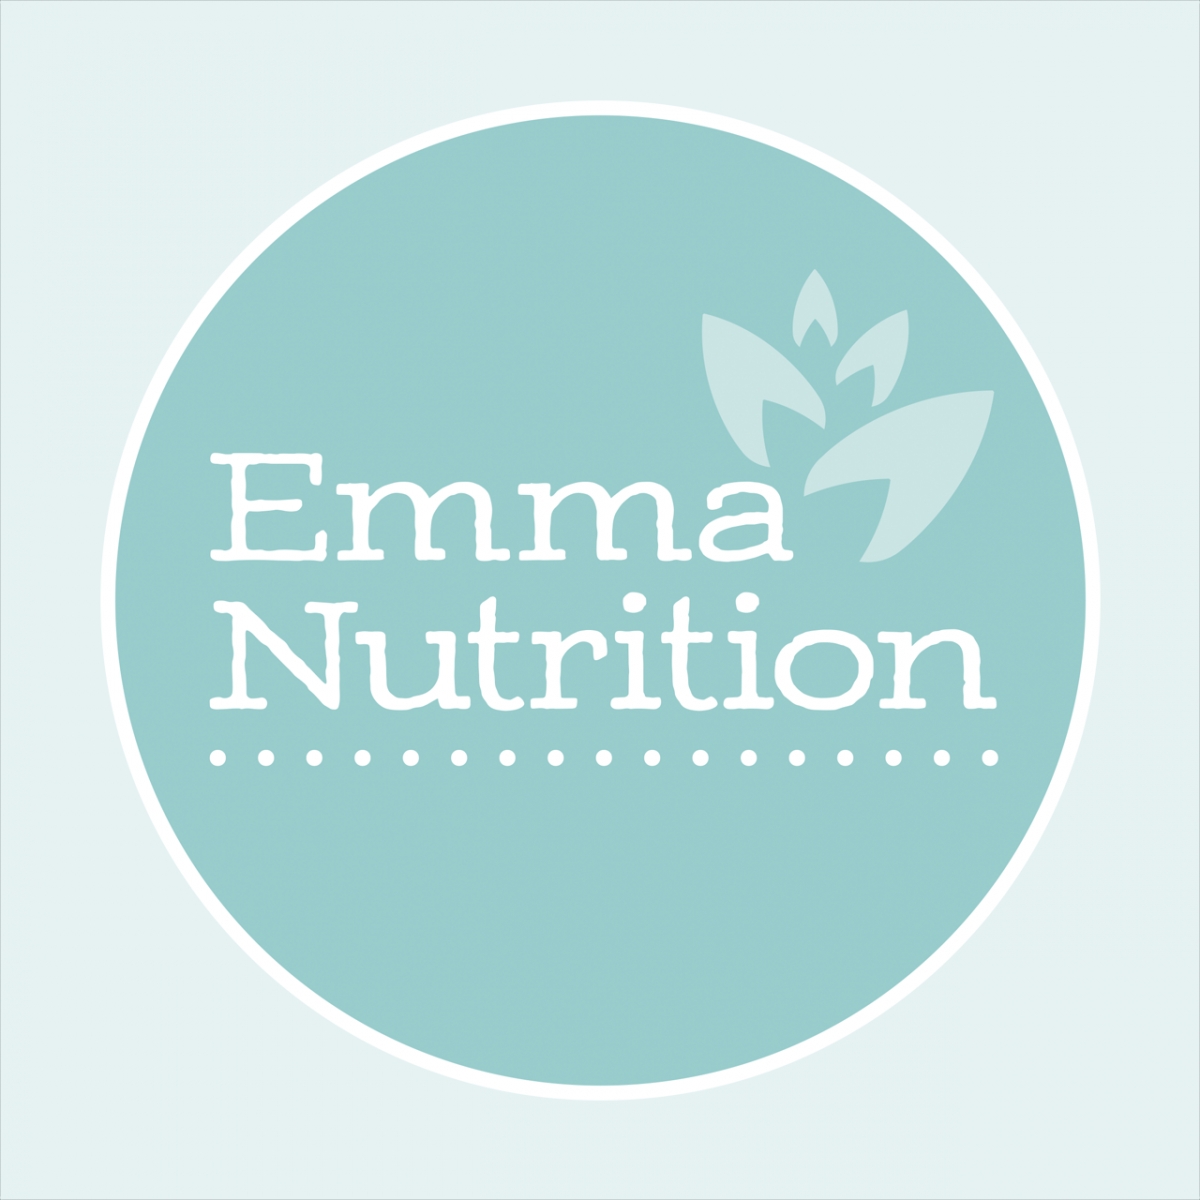 Emma Nutrition